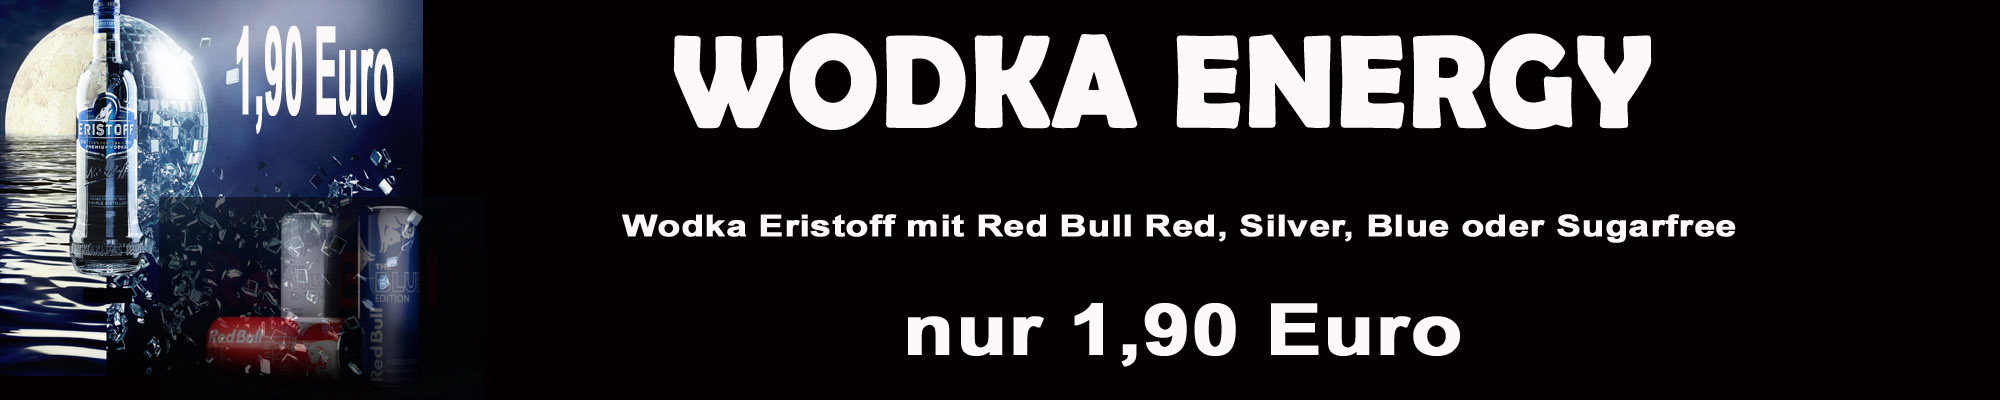 Getränkeaktion-Wodka-Energy-Kopie